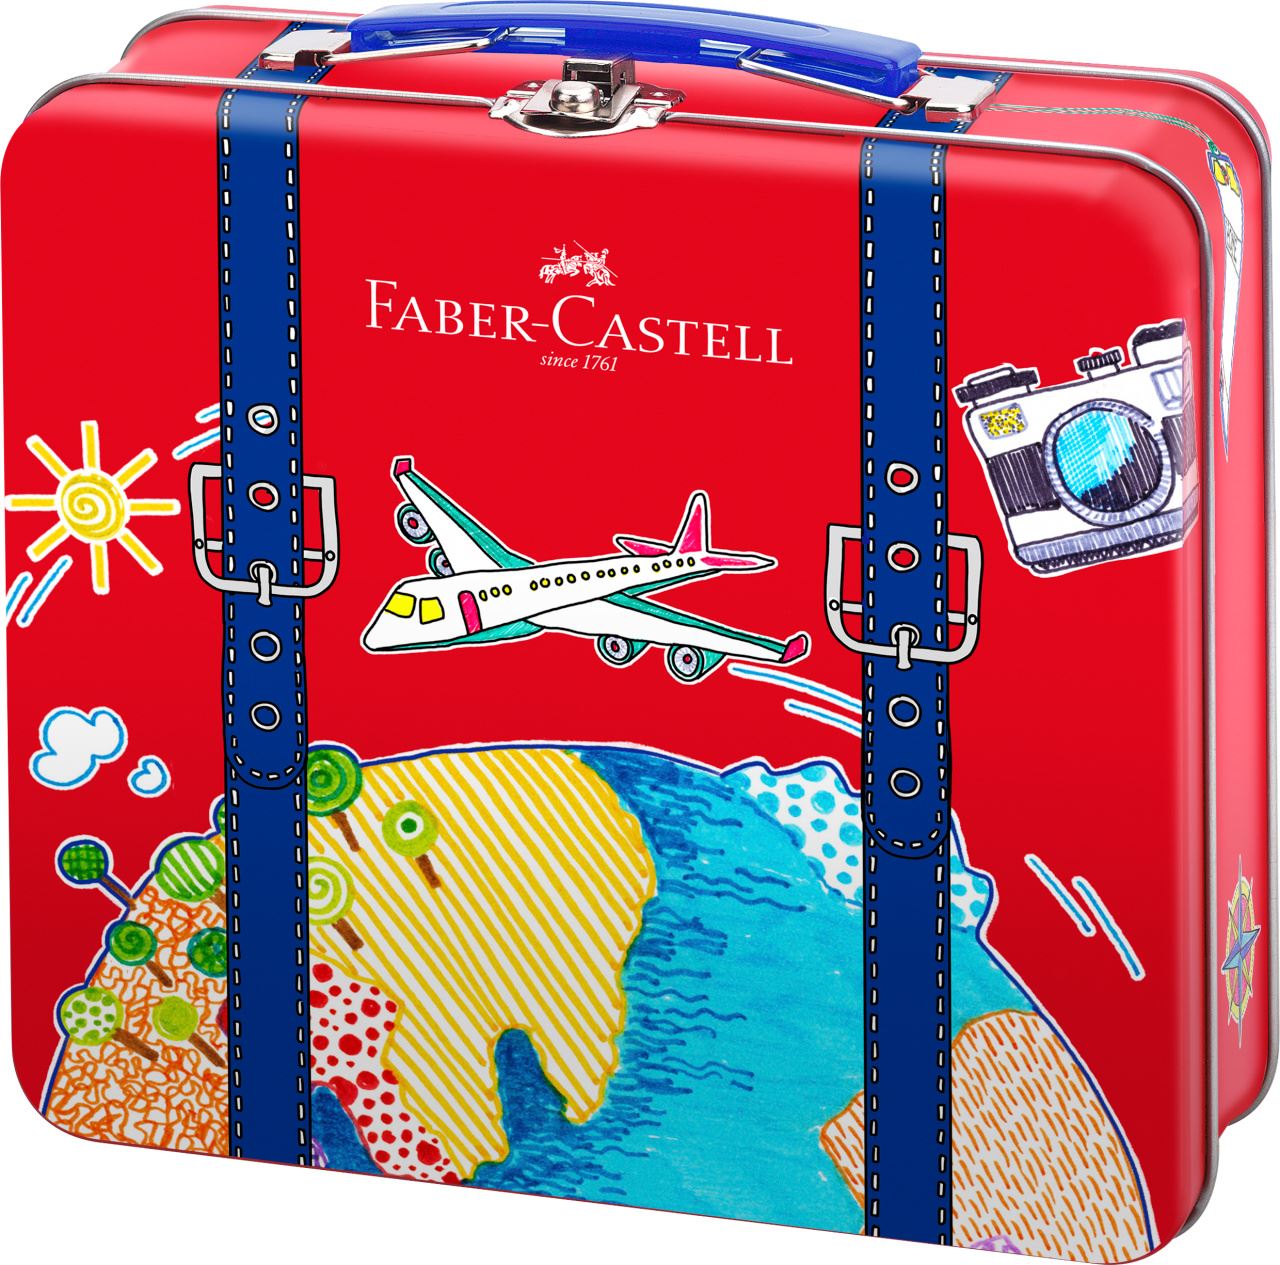 Faber-Castell - Marcadores Connector Maleta de Viaje x40